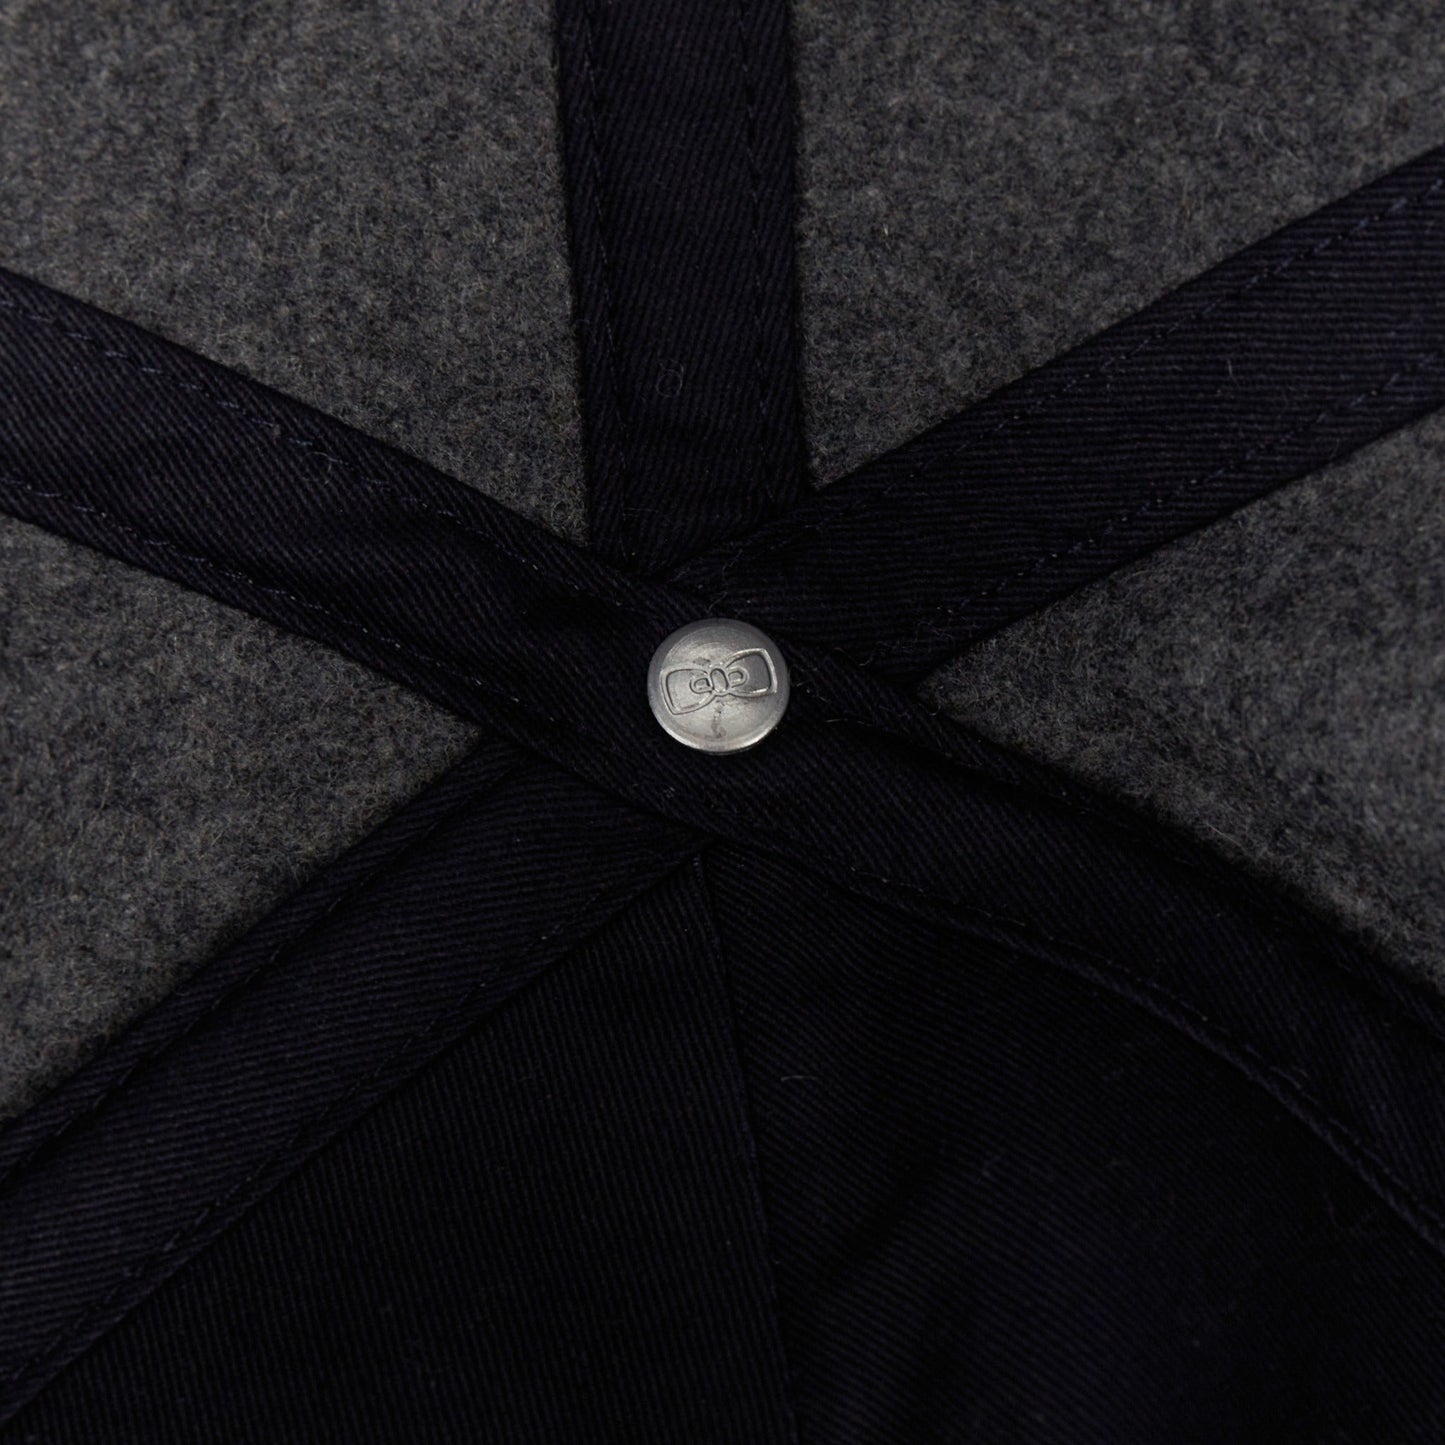 Casquette grise bicolore feutrée - Image 3